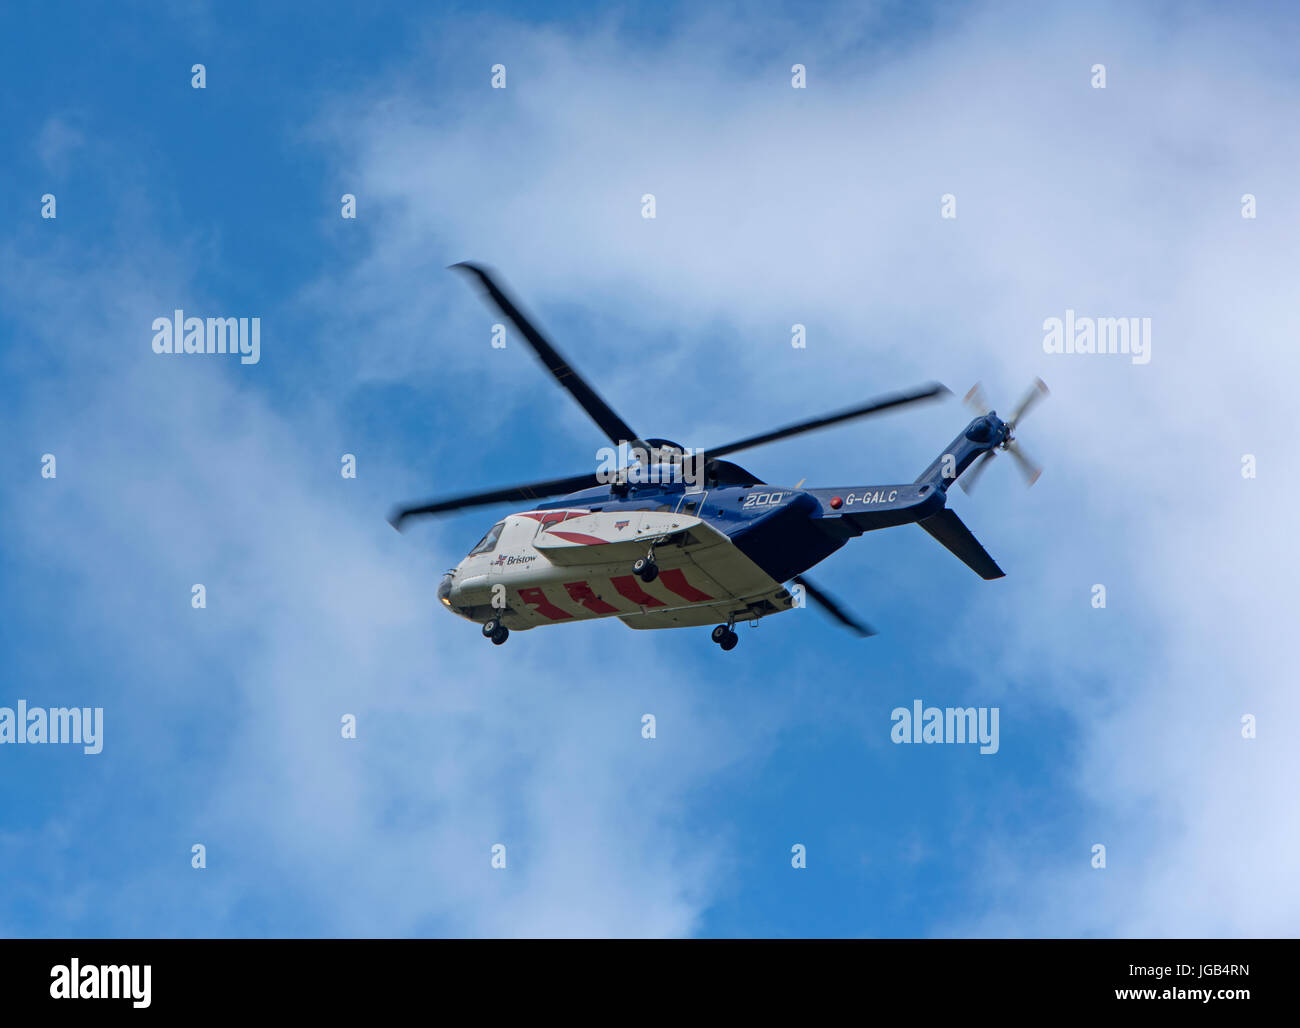 Bristols S92un helicóptero en vuelo de entrenamiento a través del aeropuerto de Inverness en la región de tierras altas en las Highlands escocesas. En el Reino Unido. Foto de stock